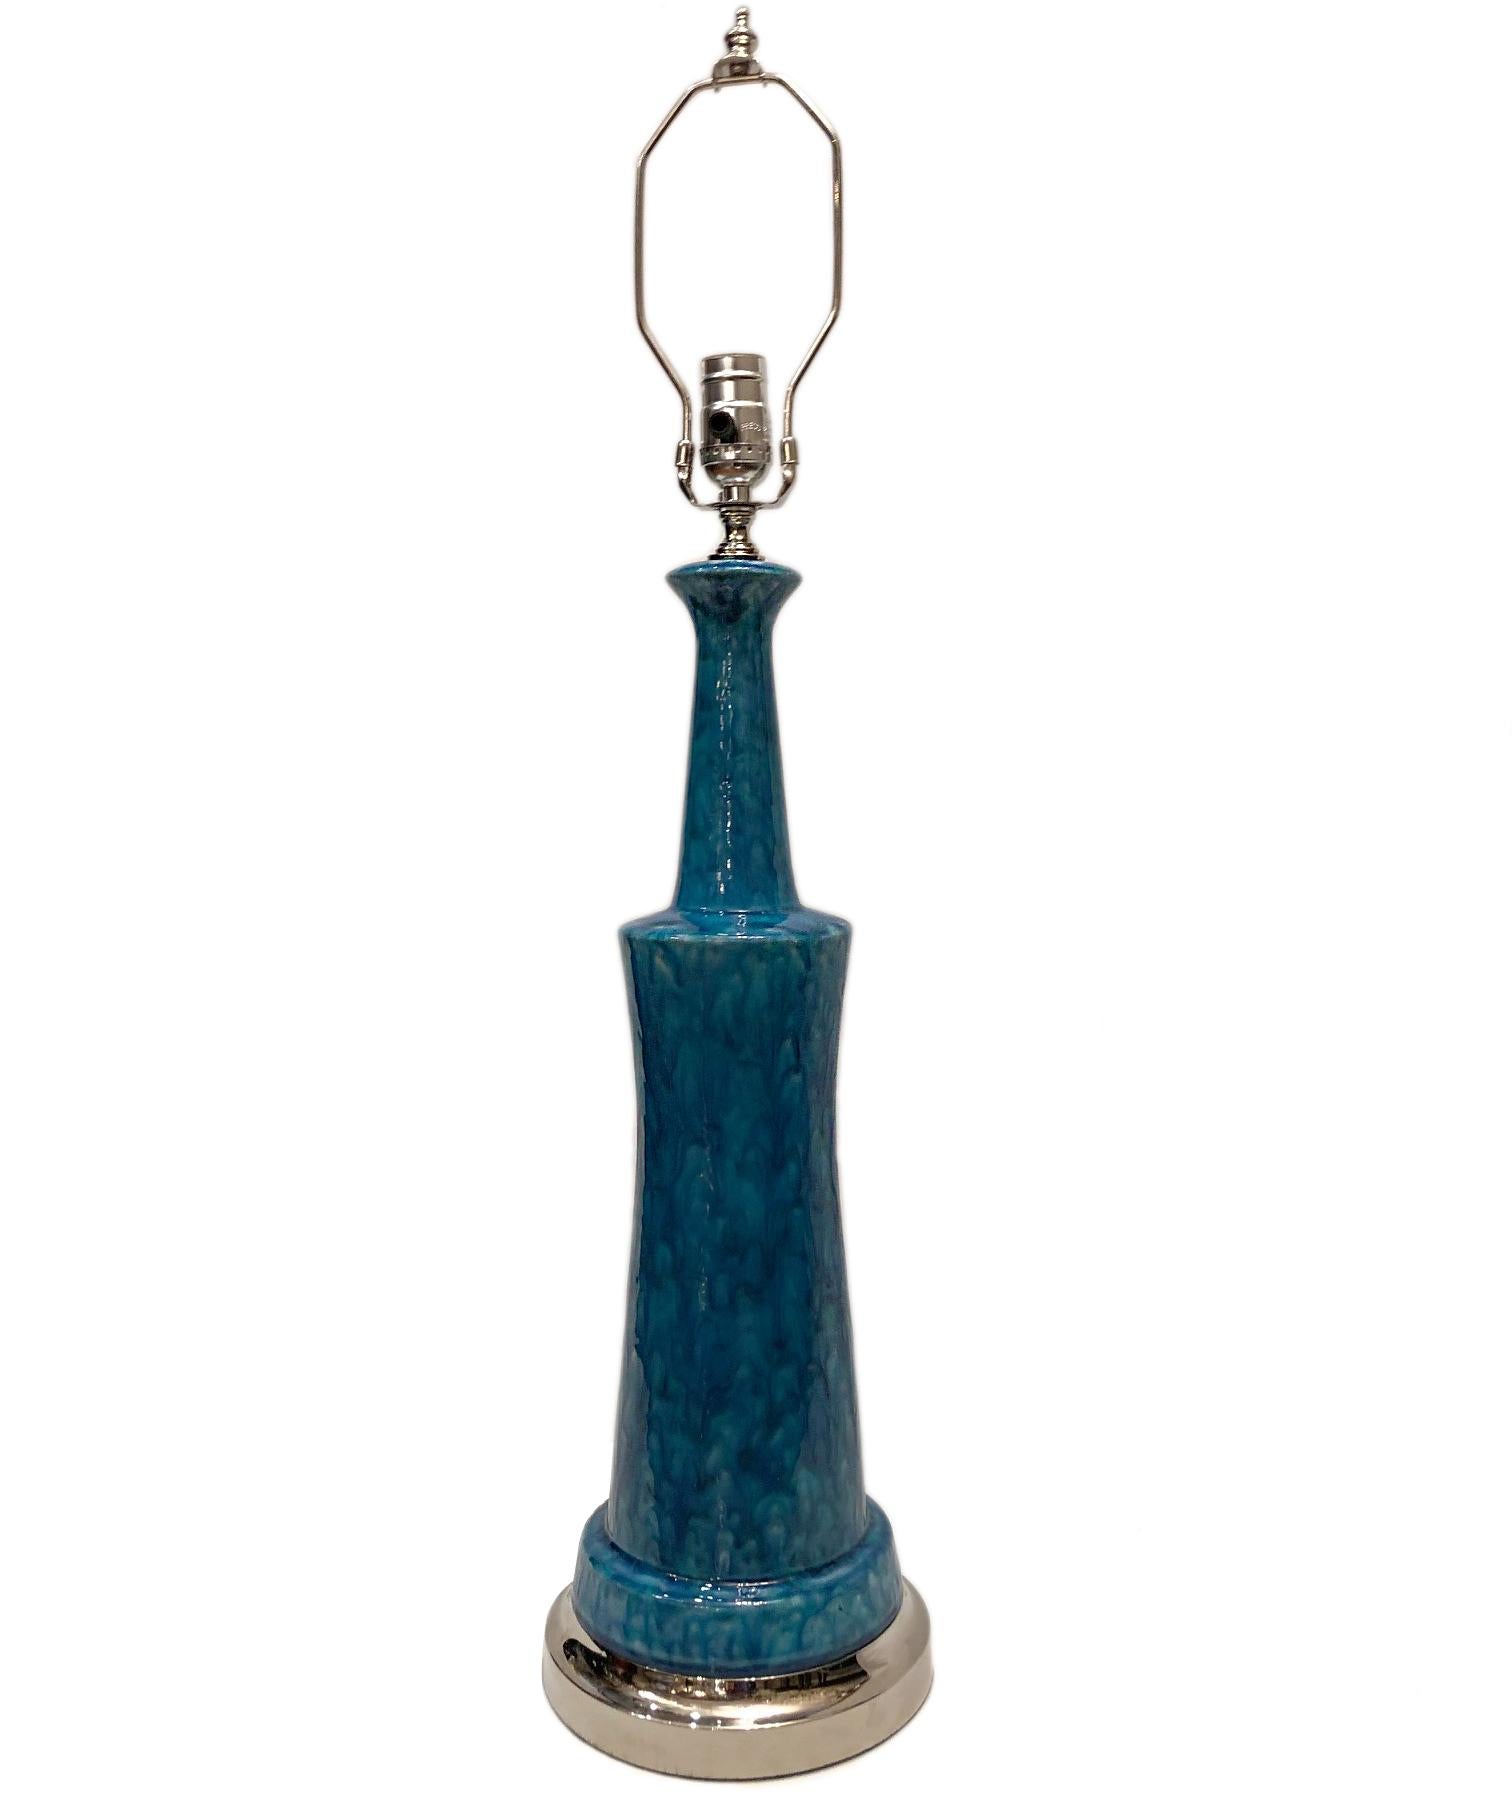 Lampe de table italienne des années 1960 en porcelaine émaillée bleue avec base en métal argenté.

Mesures :
Hauteur du corps 22,5
Diamètre 7.75 cm.